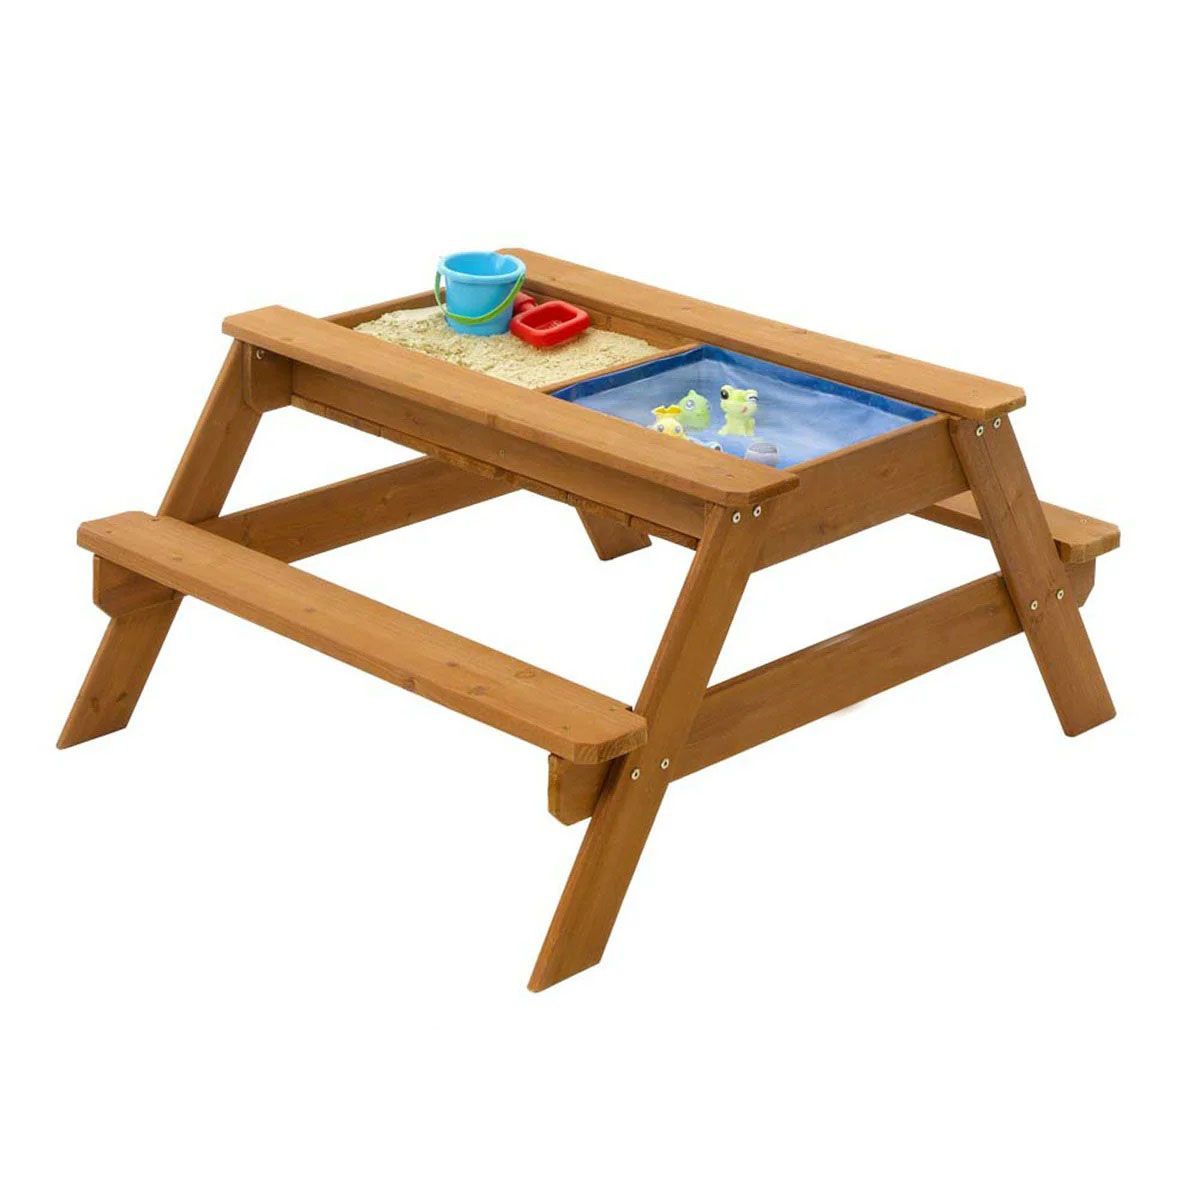 Стол для игр с песком и водой со скамейками